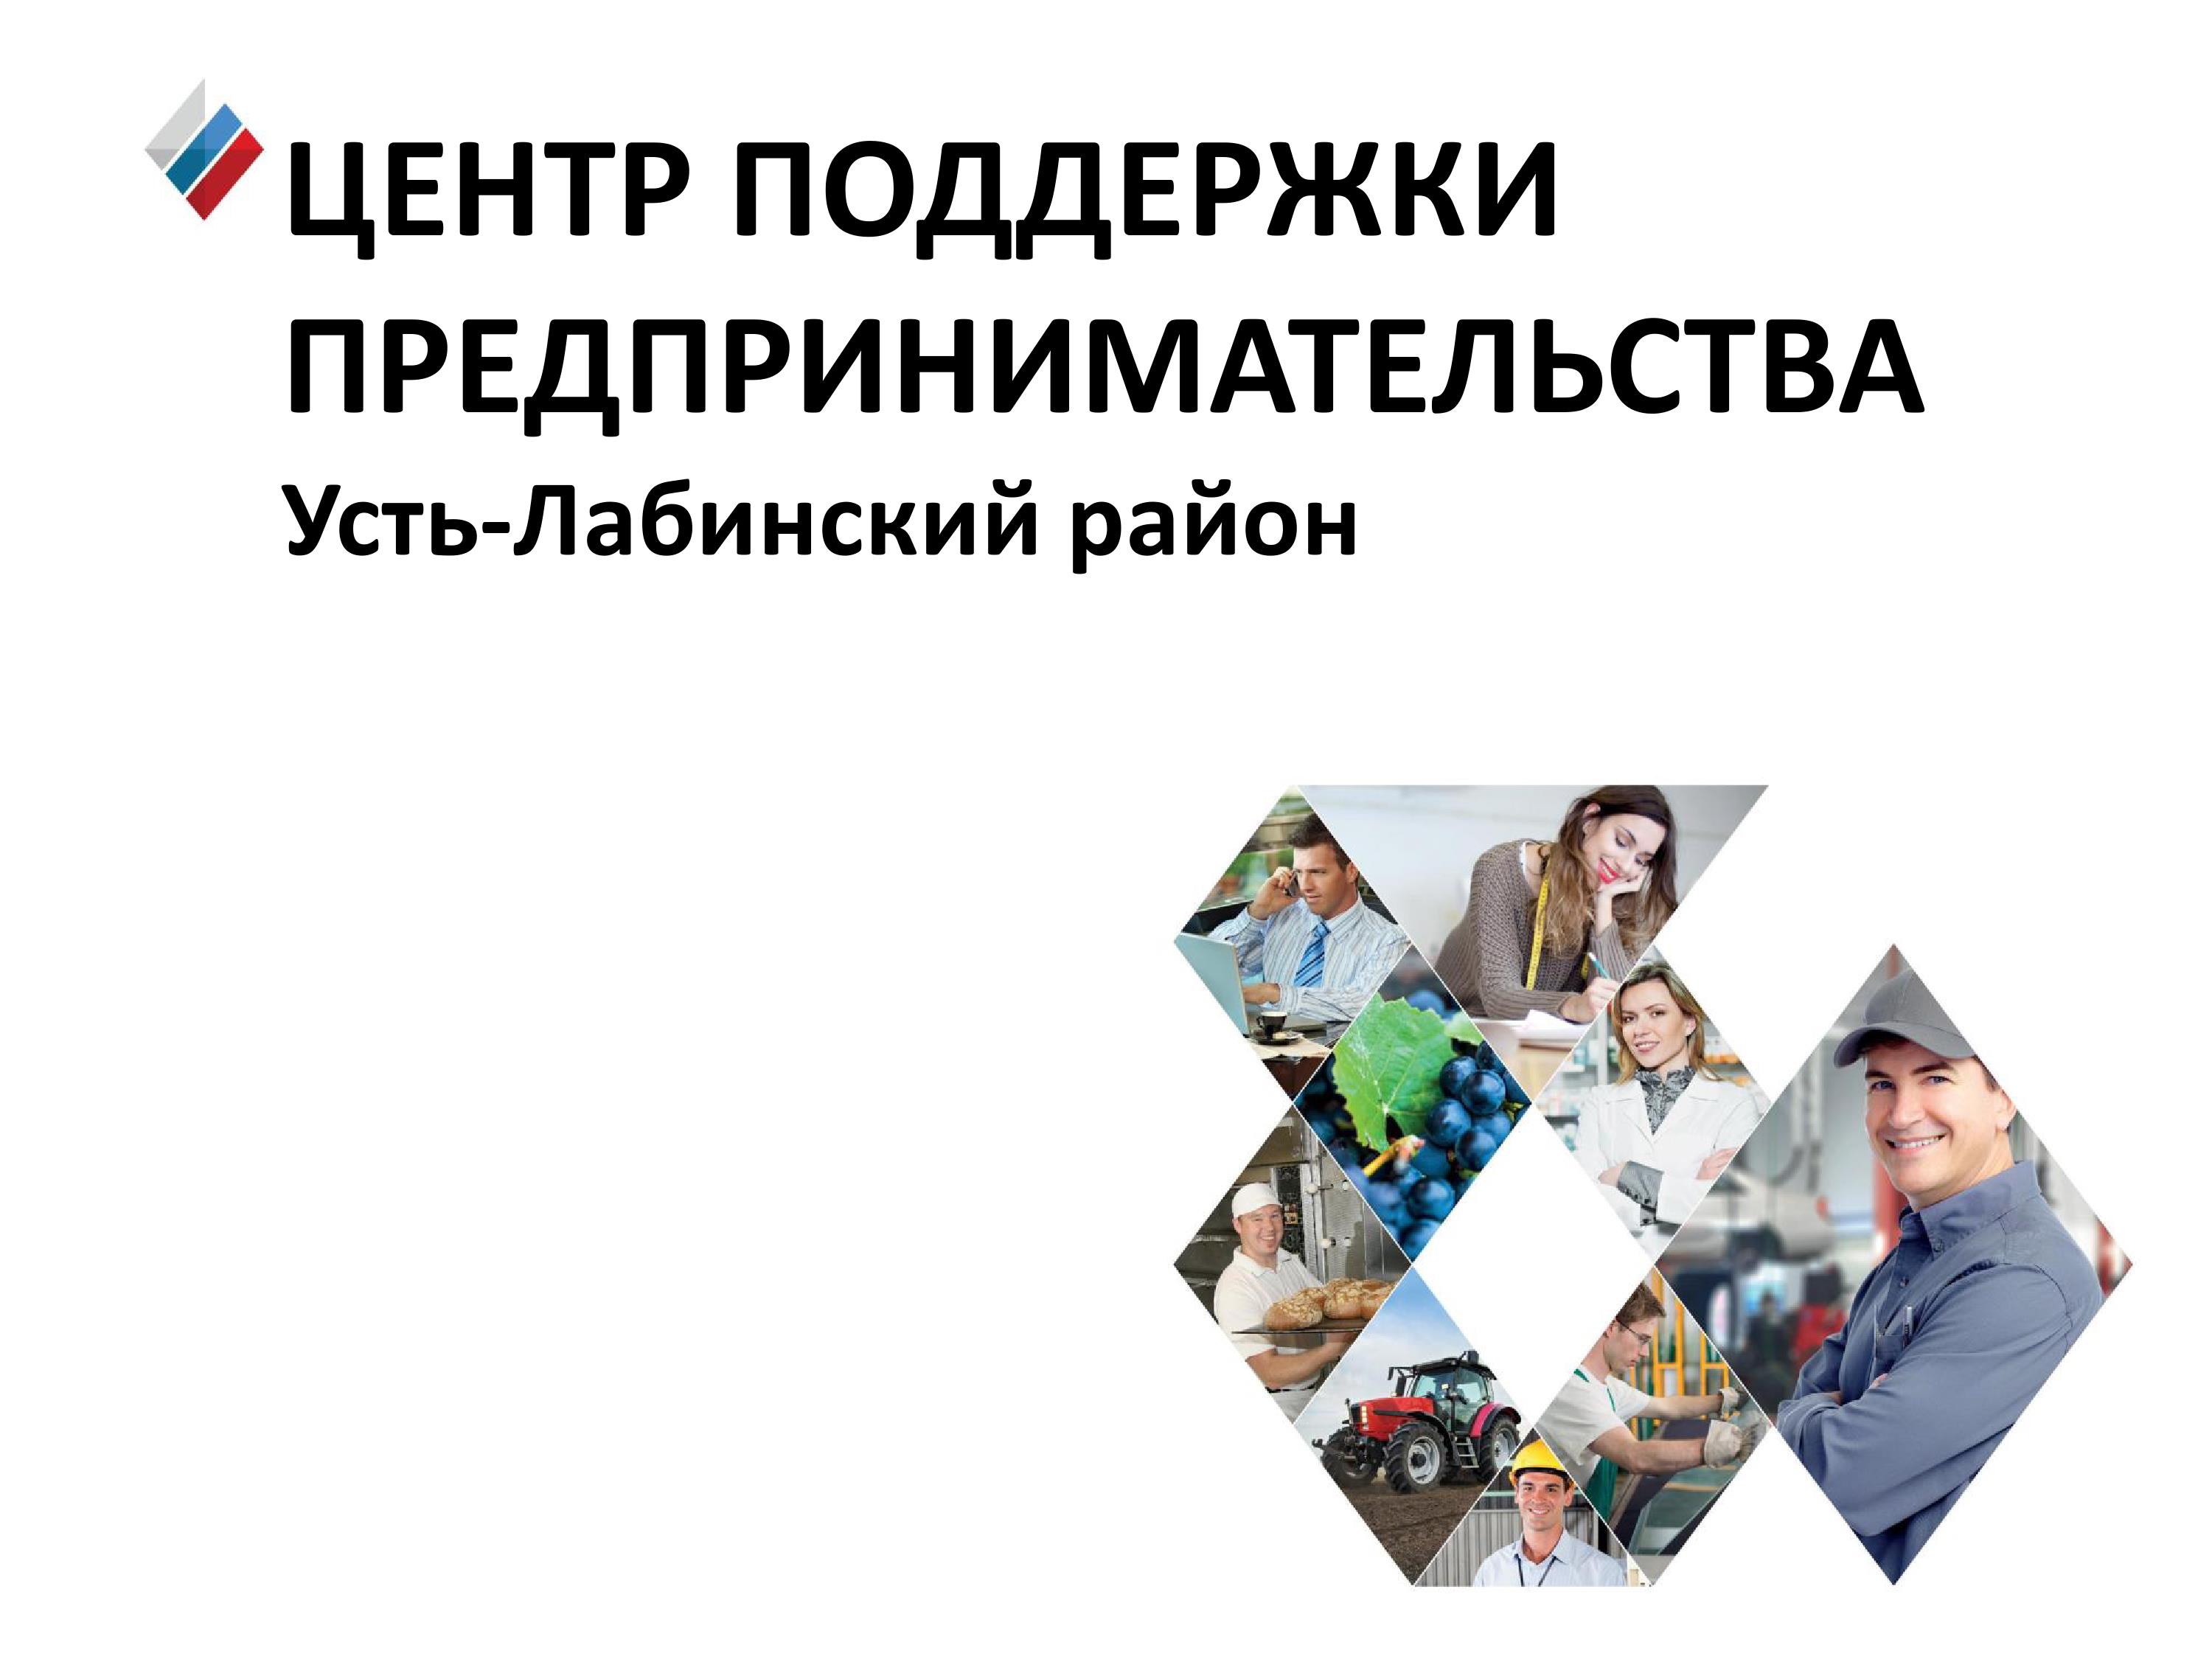 Усть-Лабинский центр поддержки предпринимательства продолжит работу